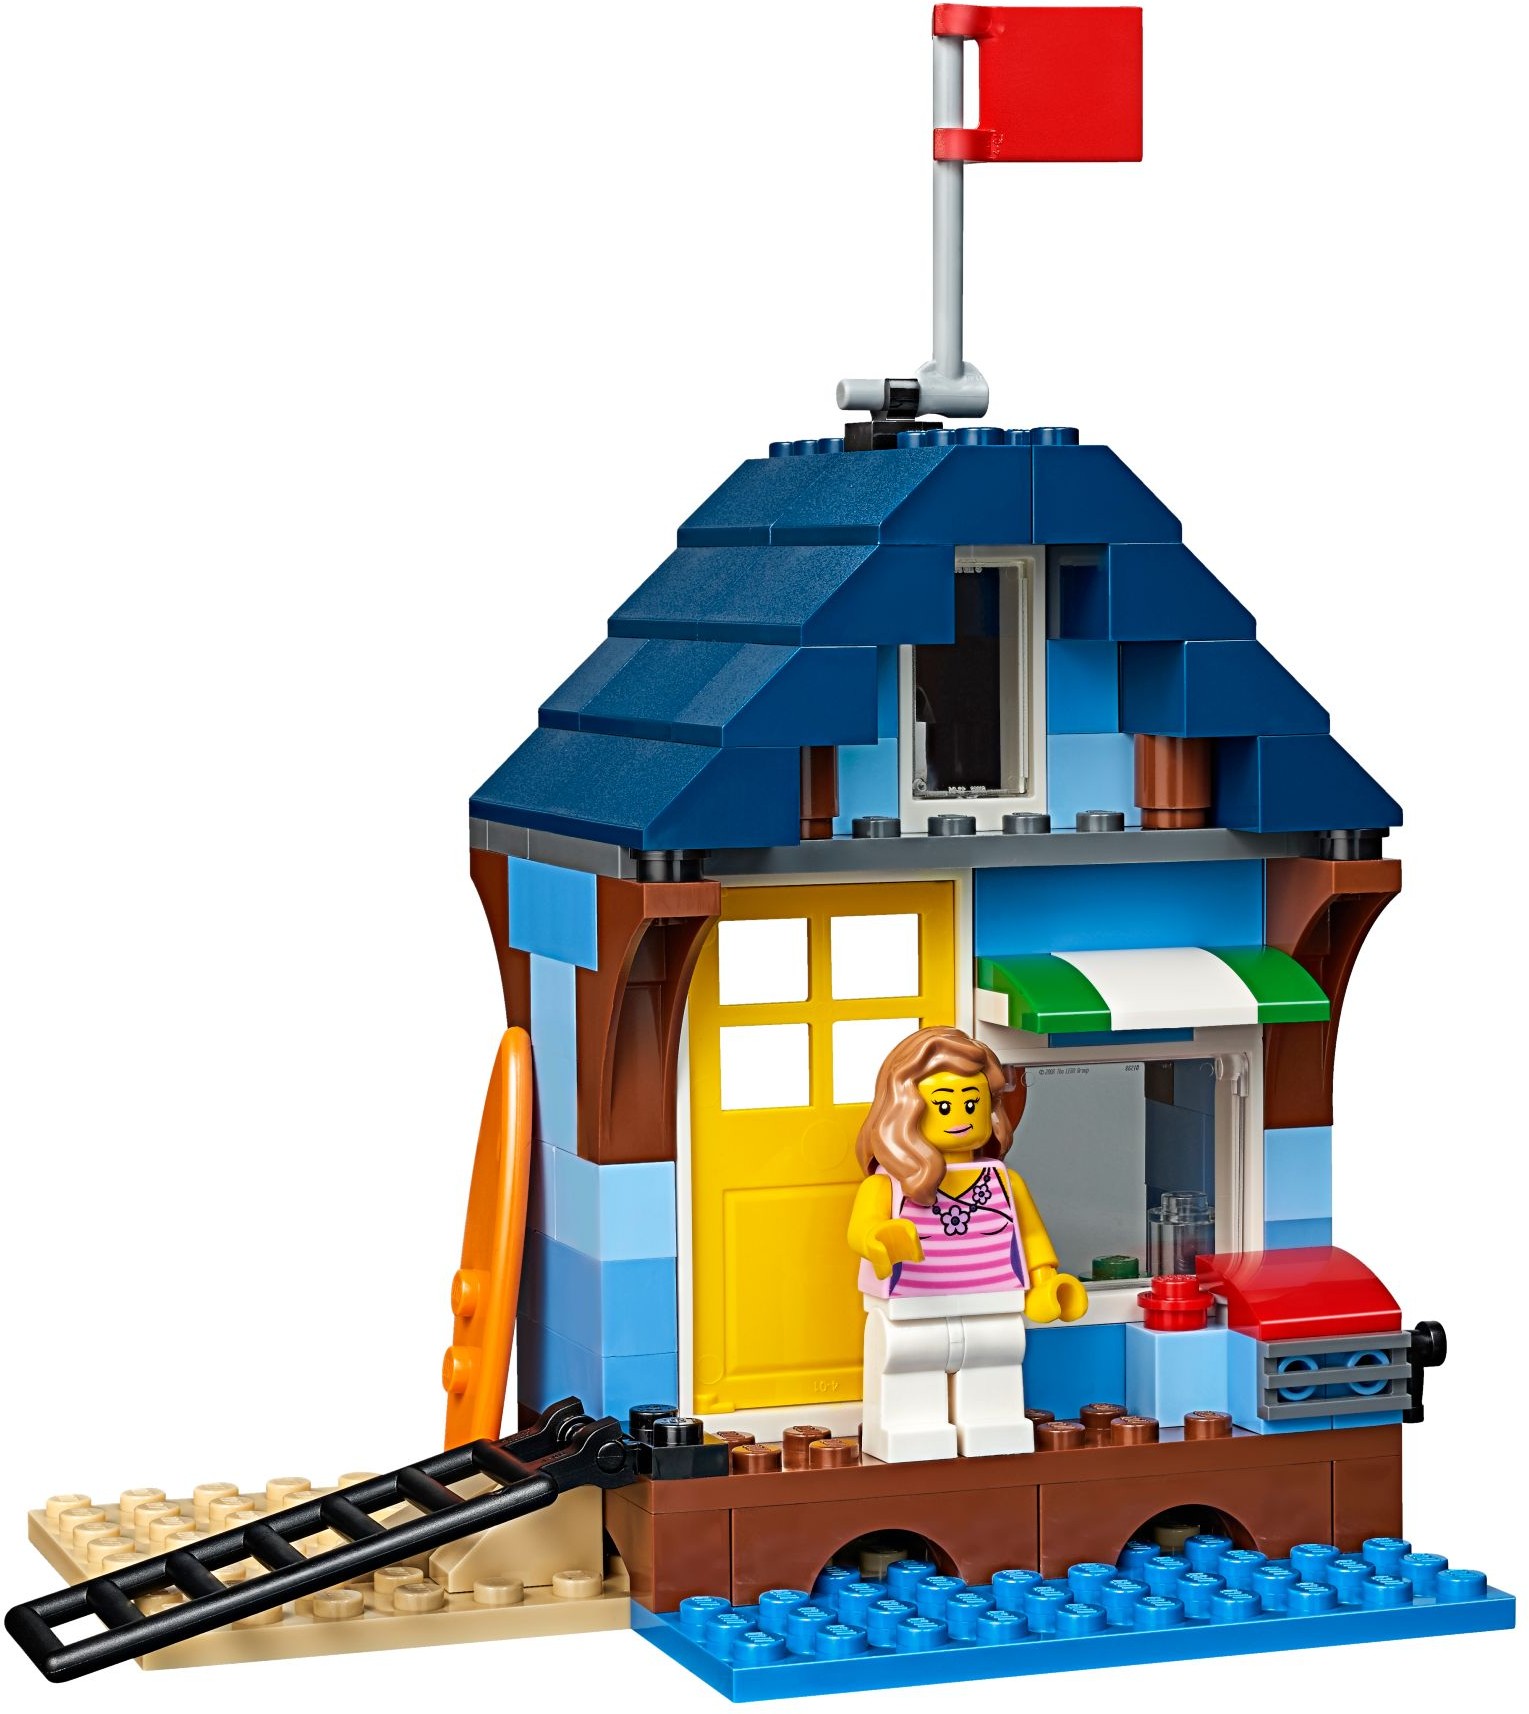 onderzeeër kloon In de genade van Lego 31063 Beachside Vacation - Lego Creator set for sale best price